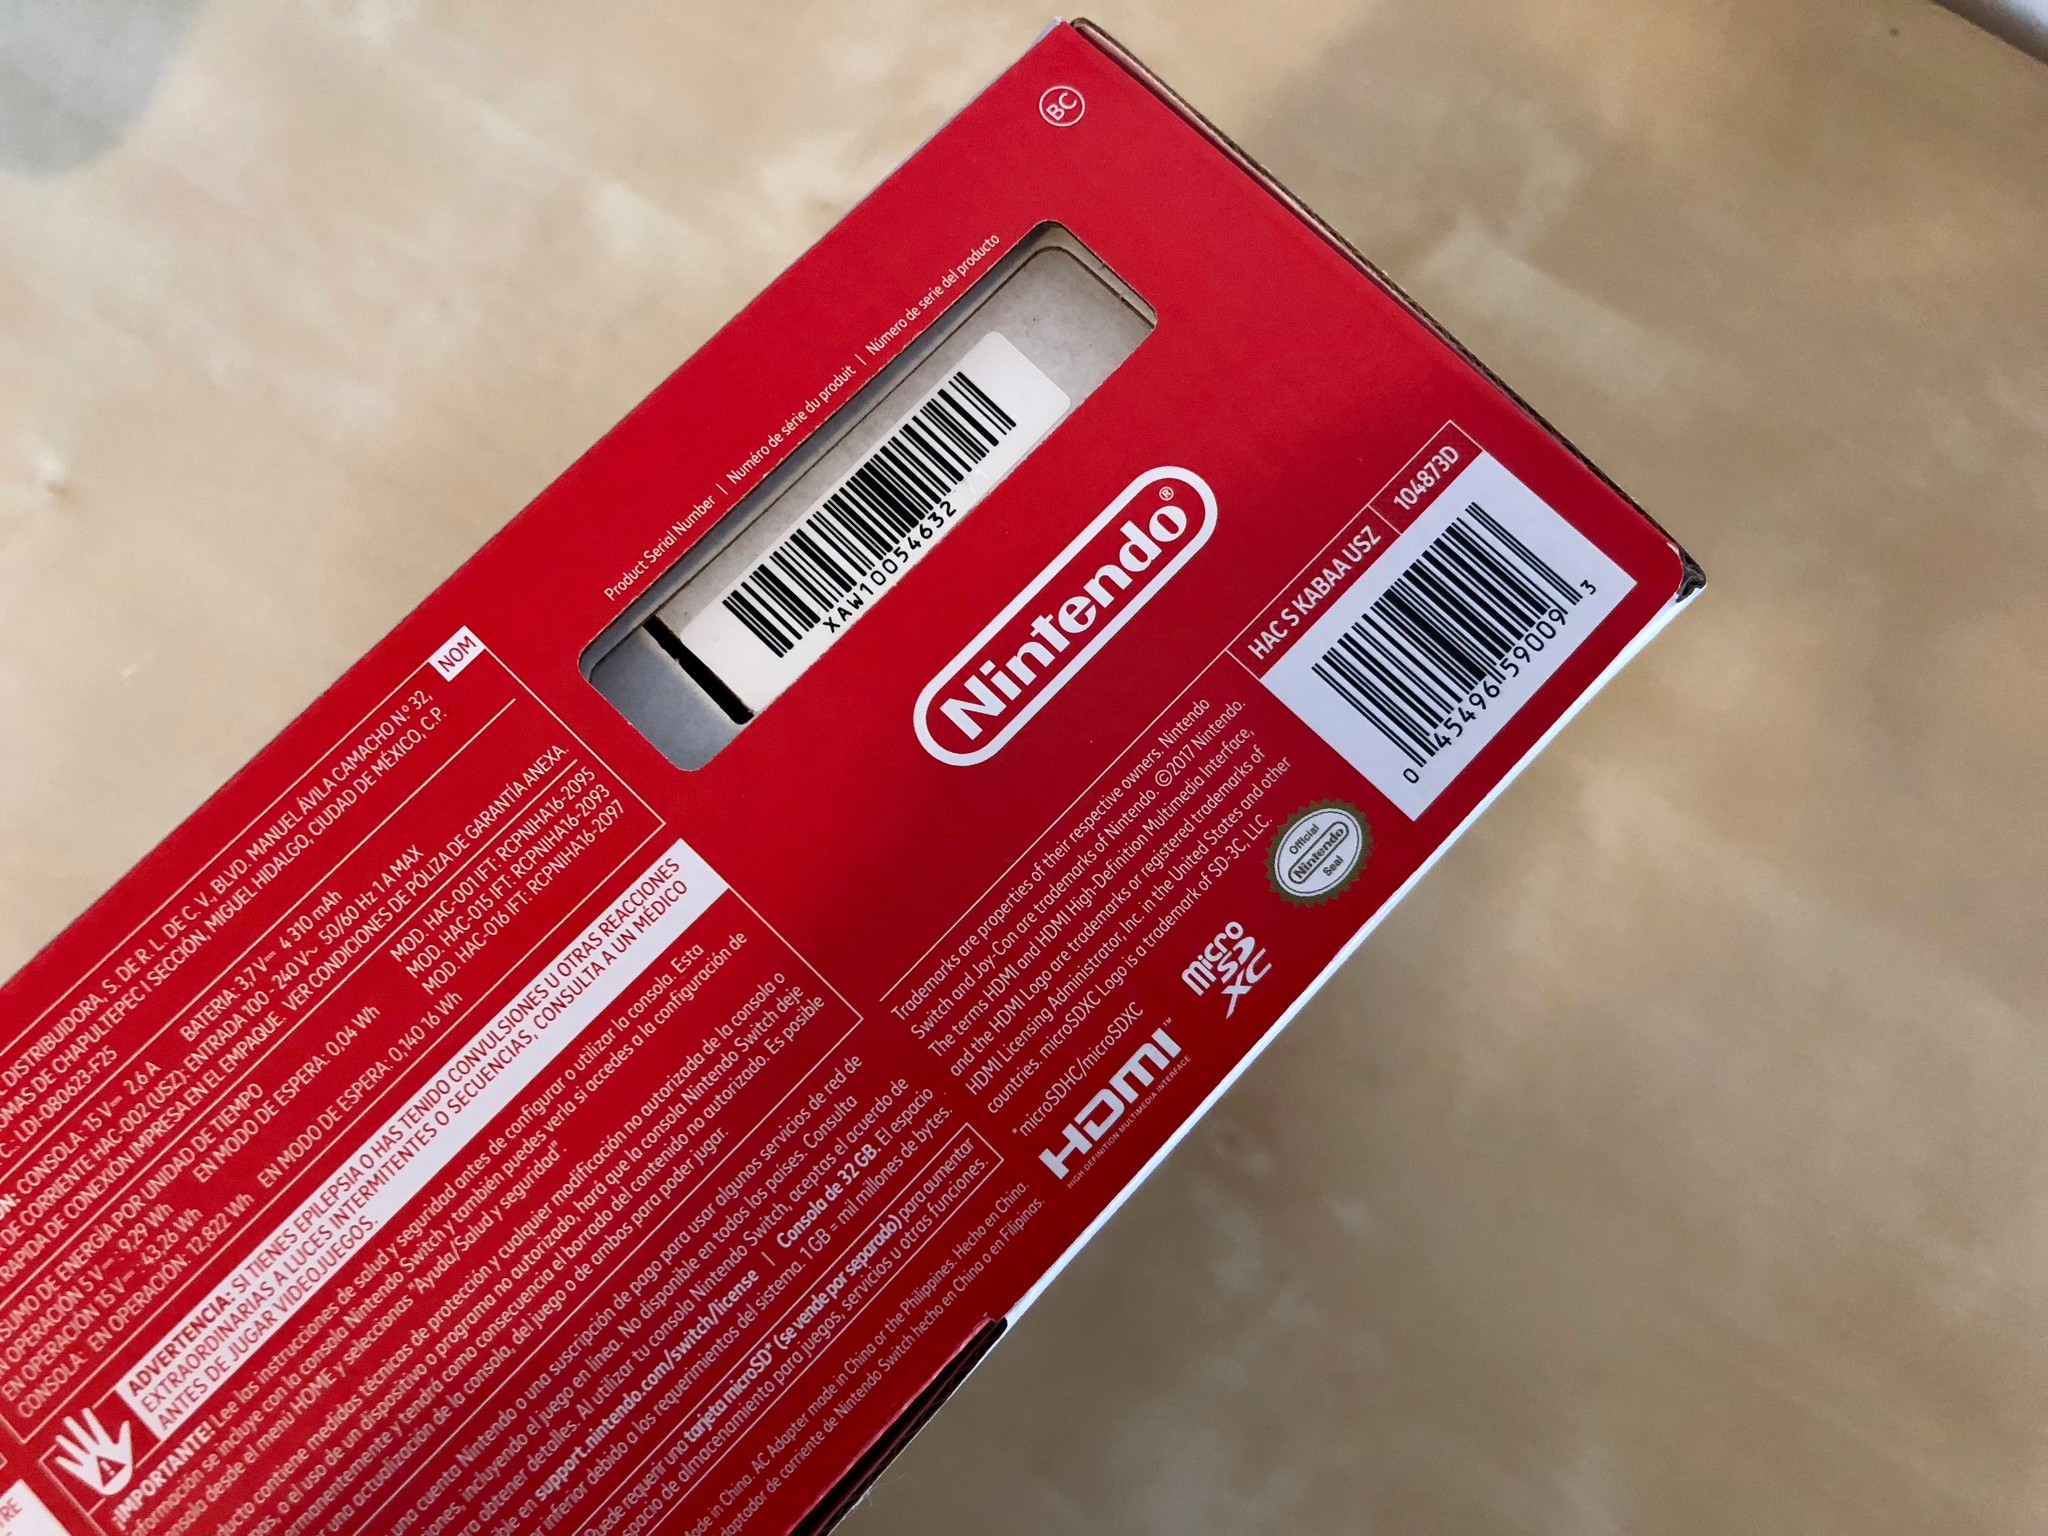 Серийный номер nintendo. Серийный номер Nintendo Switch. Nintendo Switch Lite серийный номер. Серийник Нинтендо свитч. Серийный номер на коробке Нинтендо.